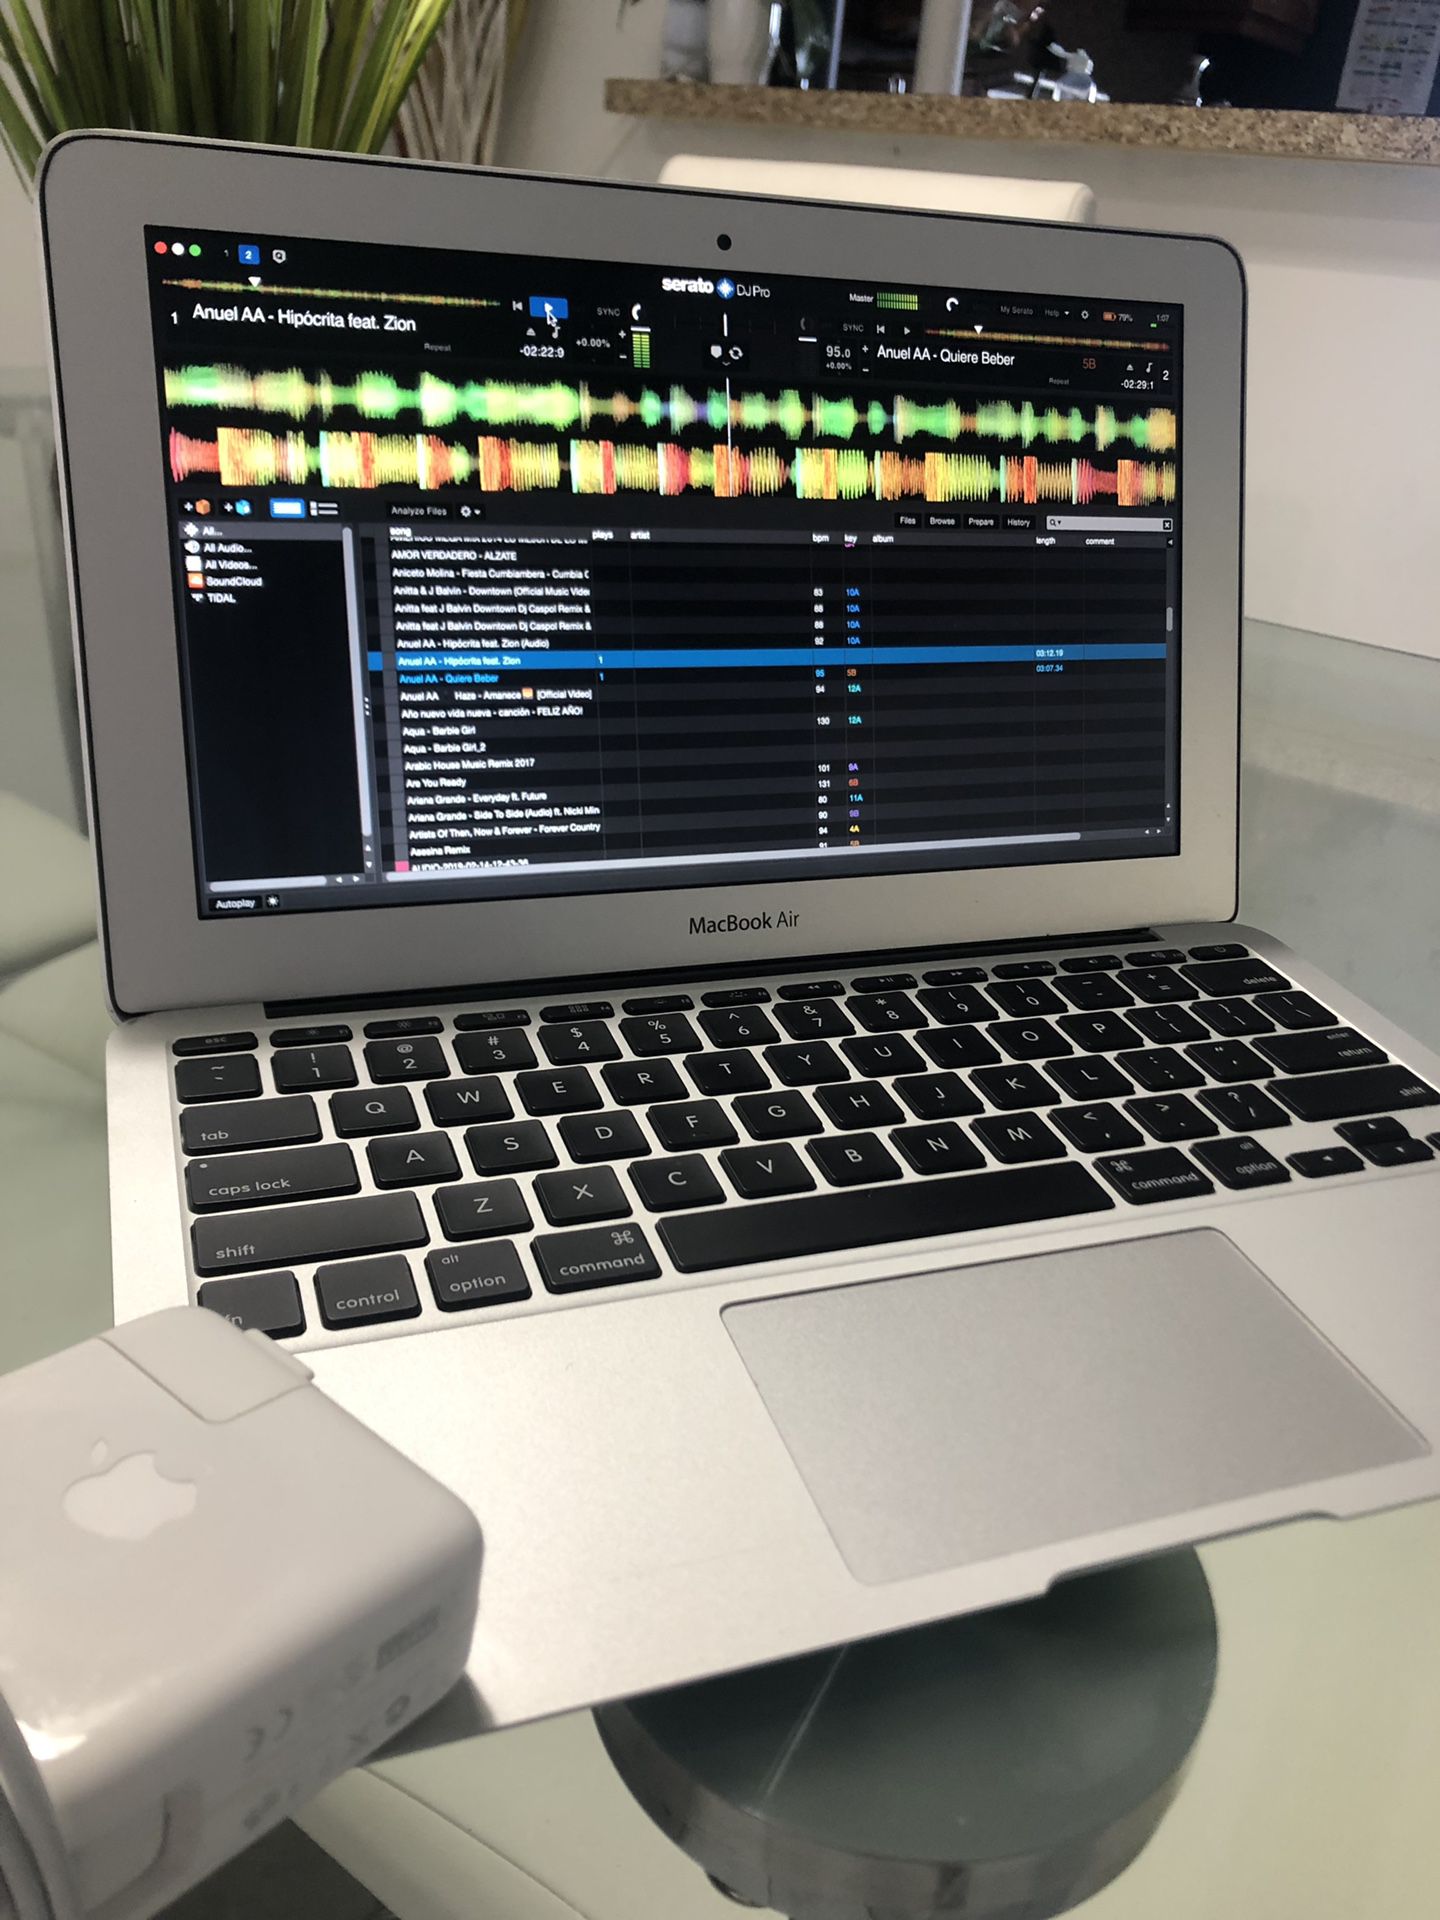 MacBook Air 11” con programa serato dj y música